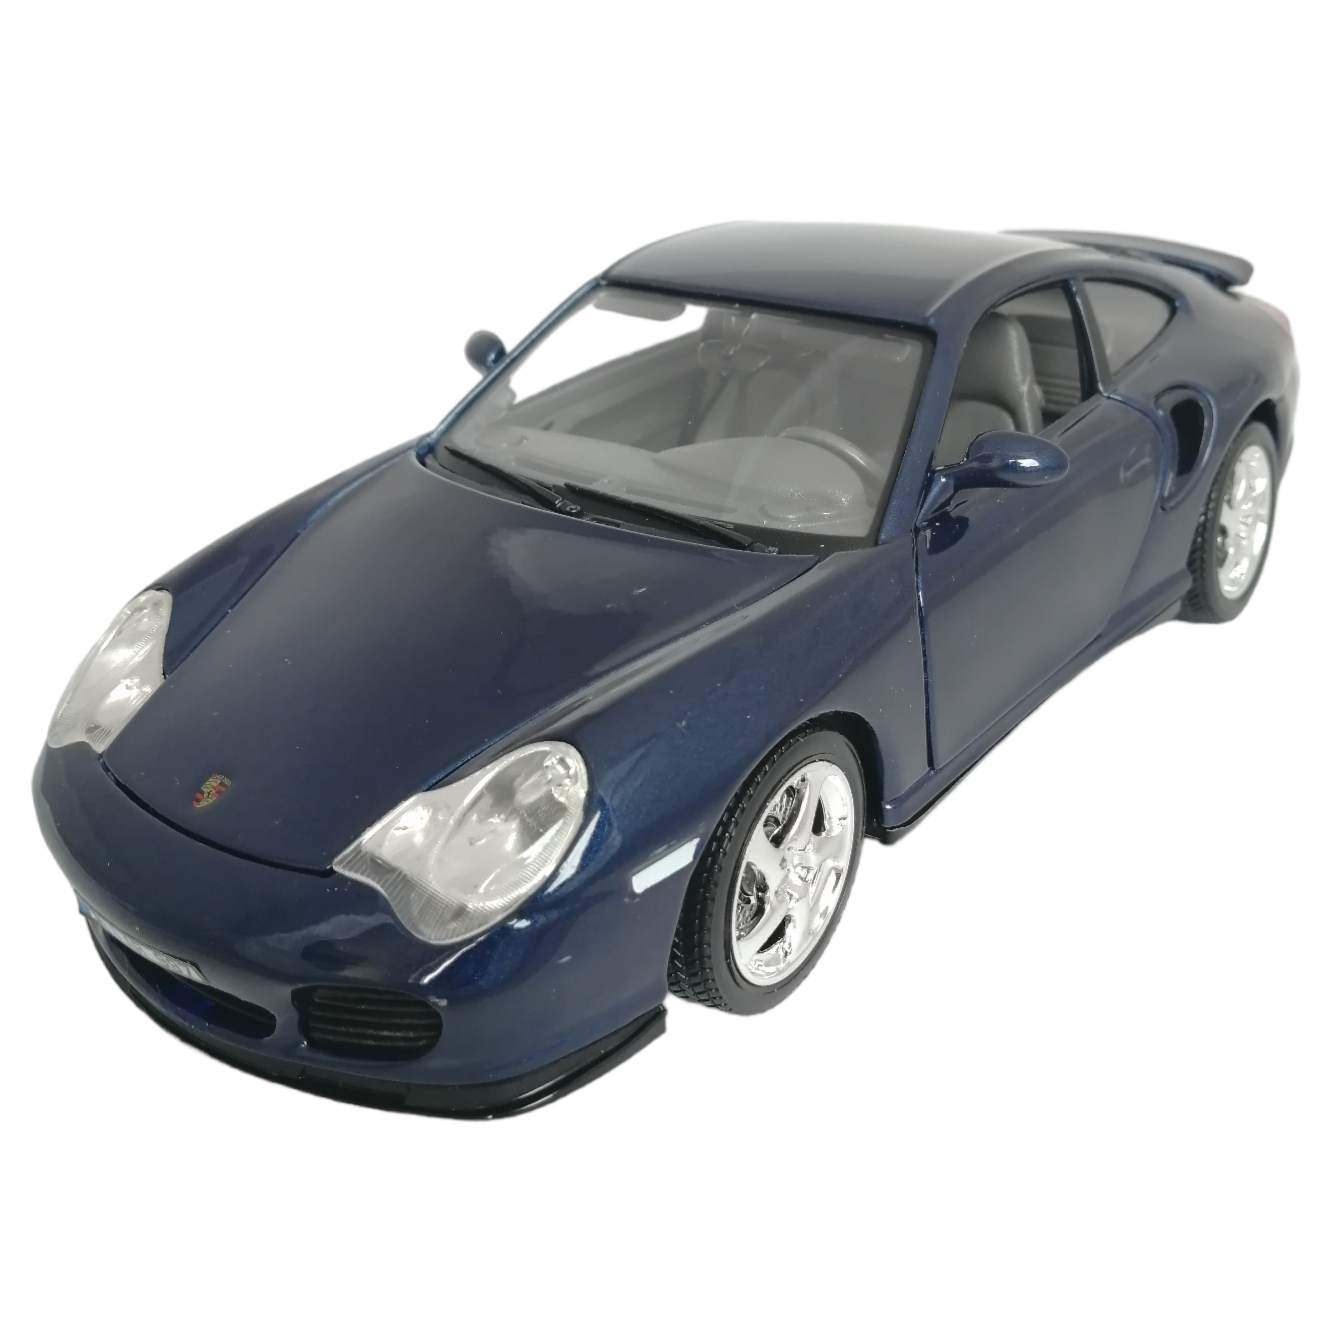 Коллекционная модель автомобиля Bburago Porsche 911 Turbo, масштаб 1:18, 18-12030